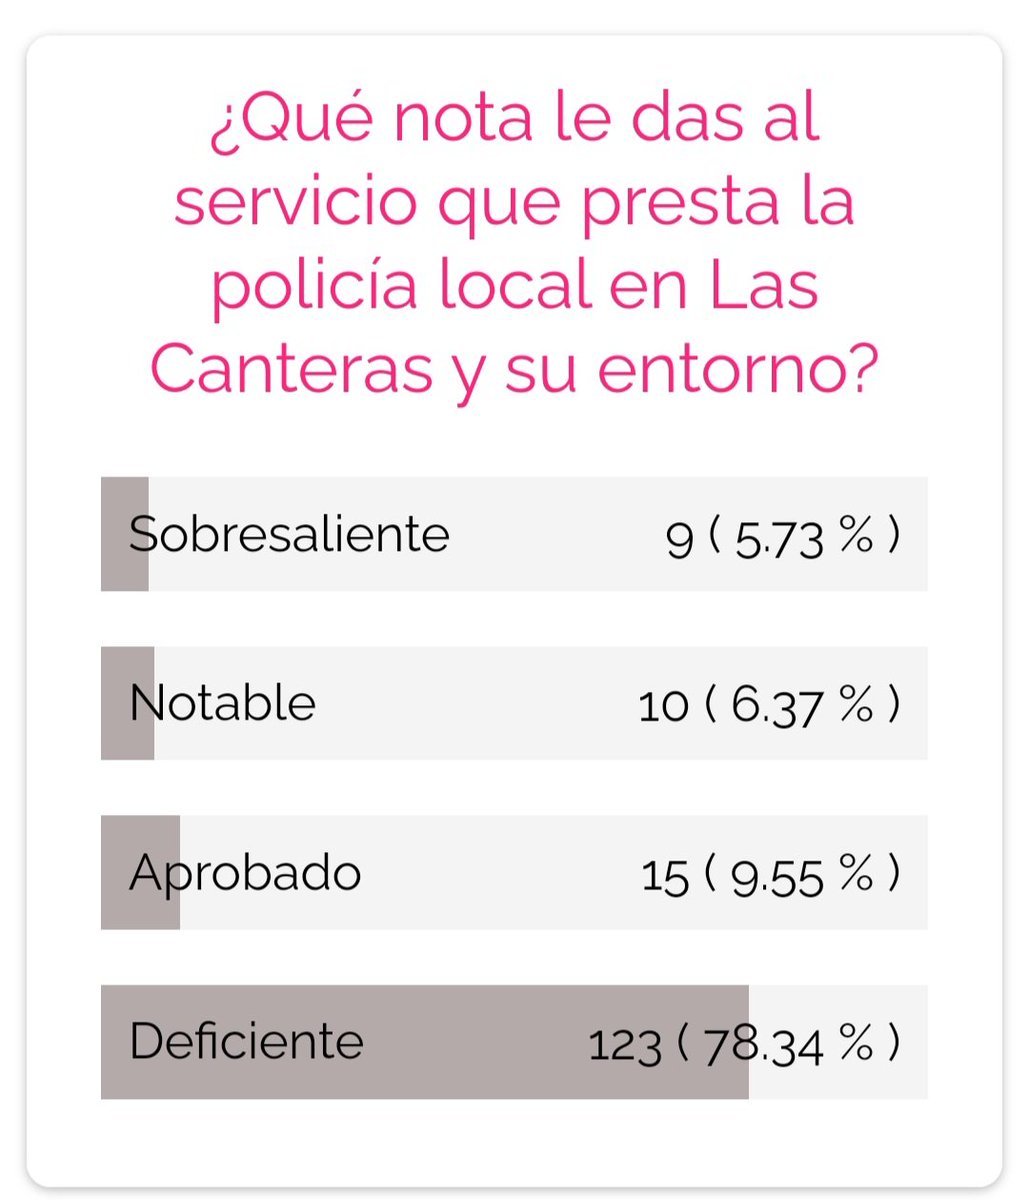 Estamos realizando una encuesta en miplayadelascanteras.com sobre la calidad del servicio de la @PoliciaLPA en Las Canteras. ¿Tienen algún comentario?